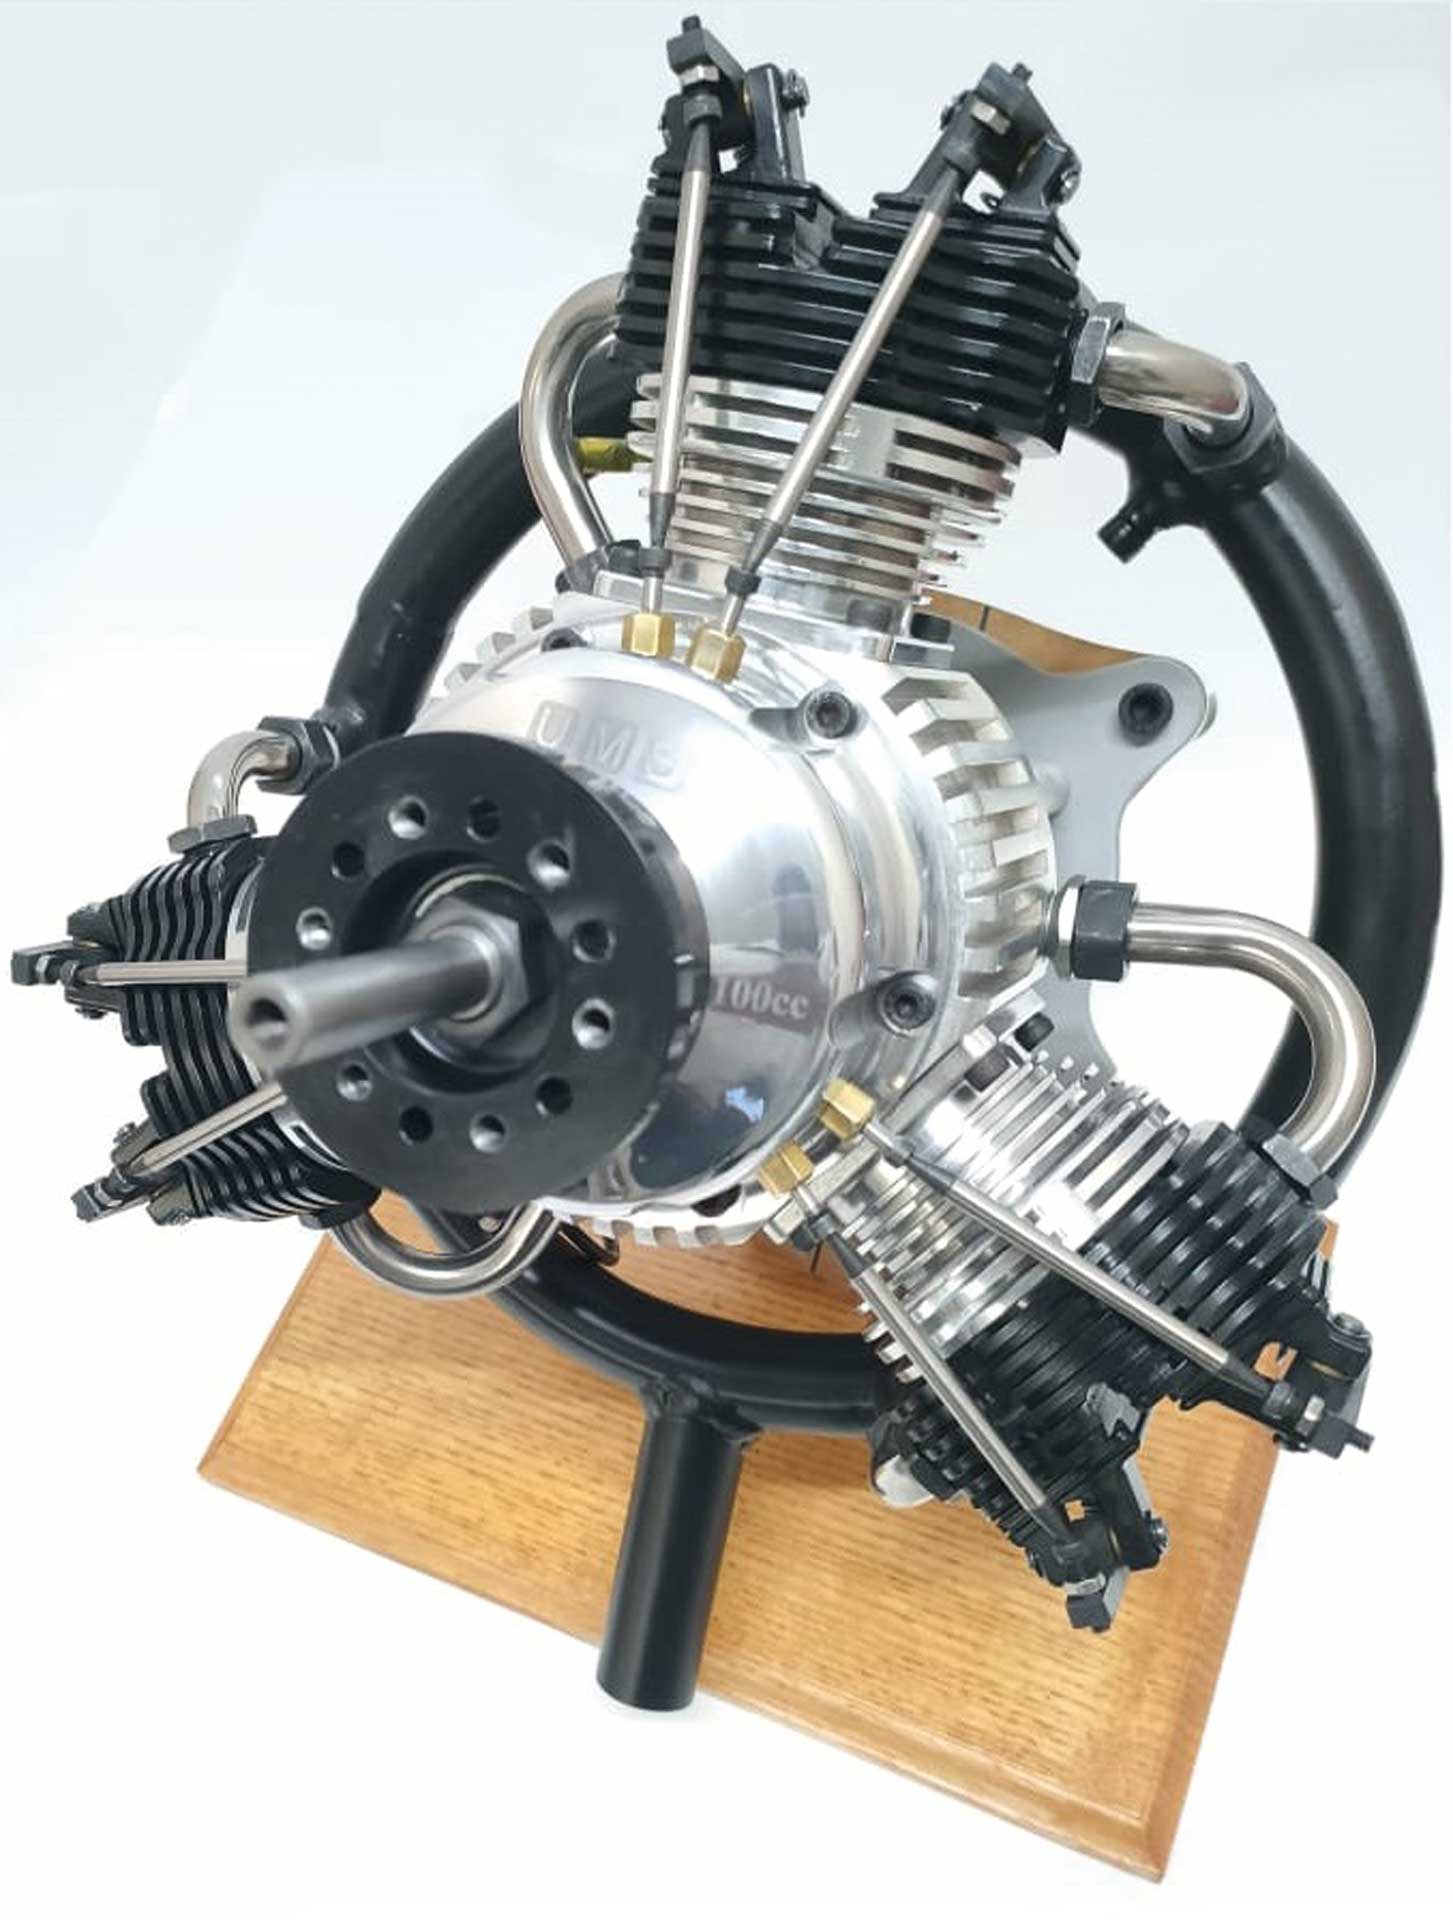 UMS radial engine 3 cylinder 100cc, gasoline